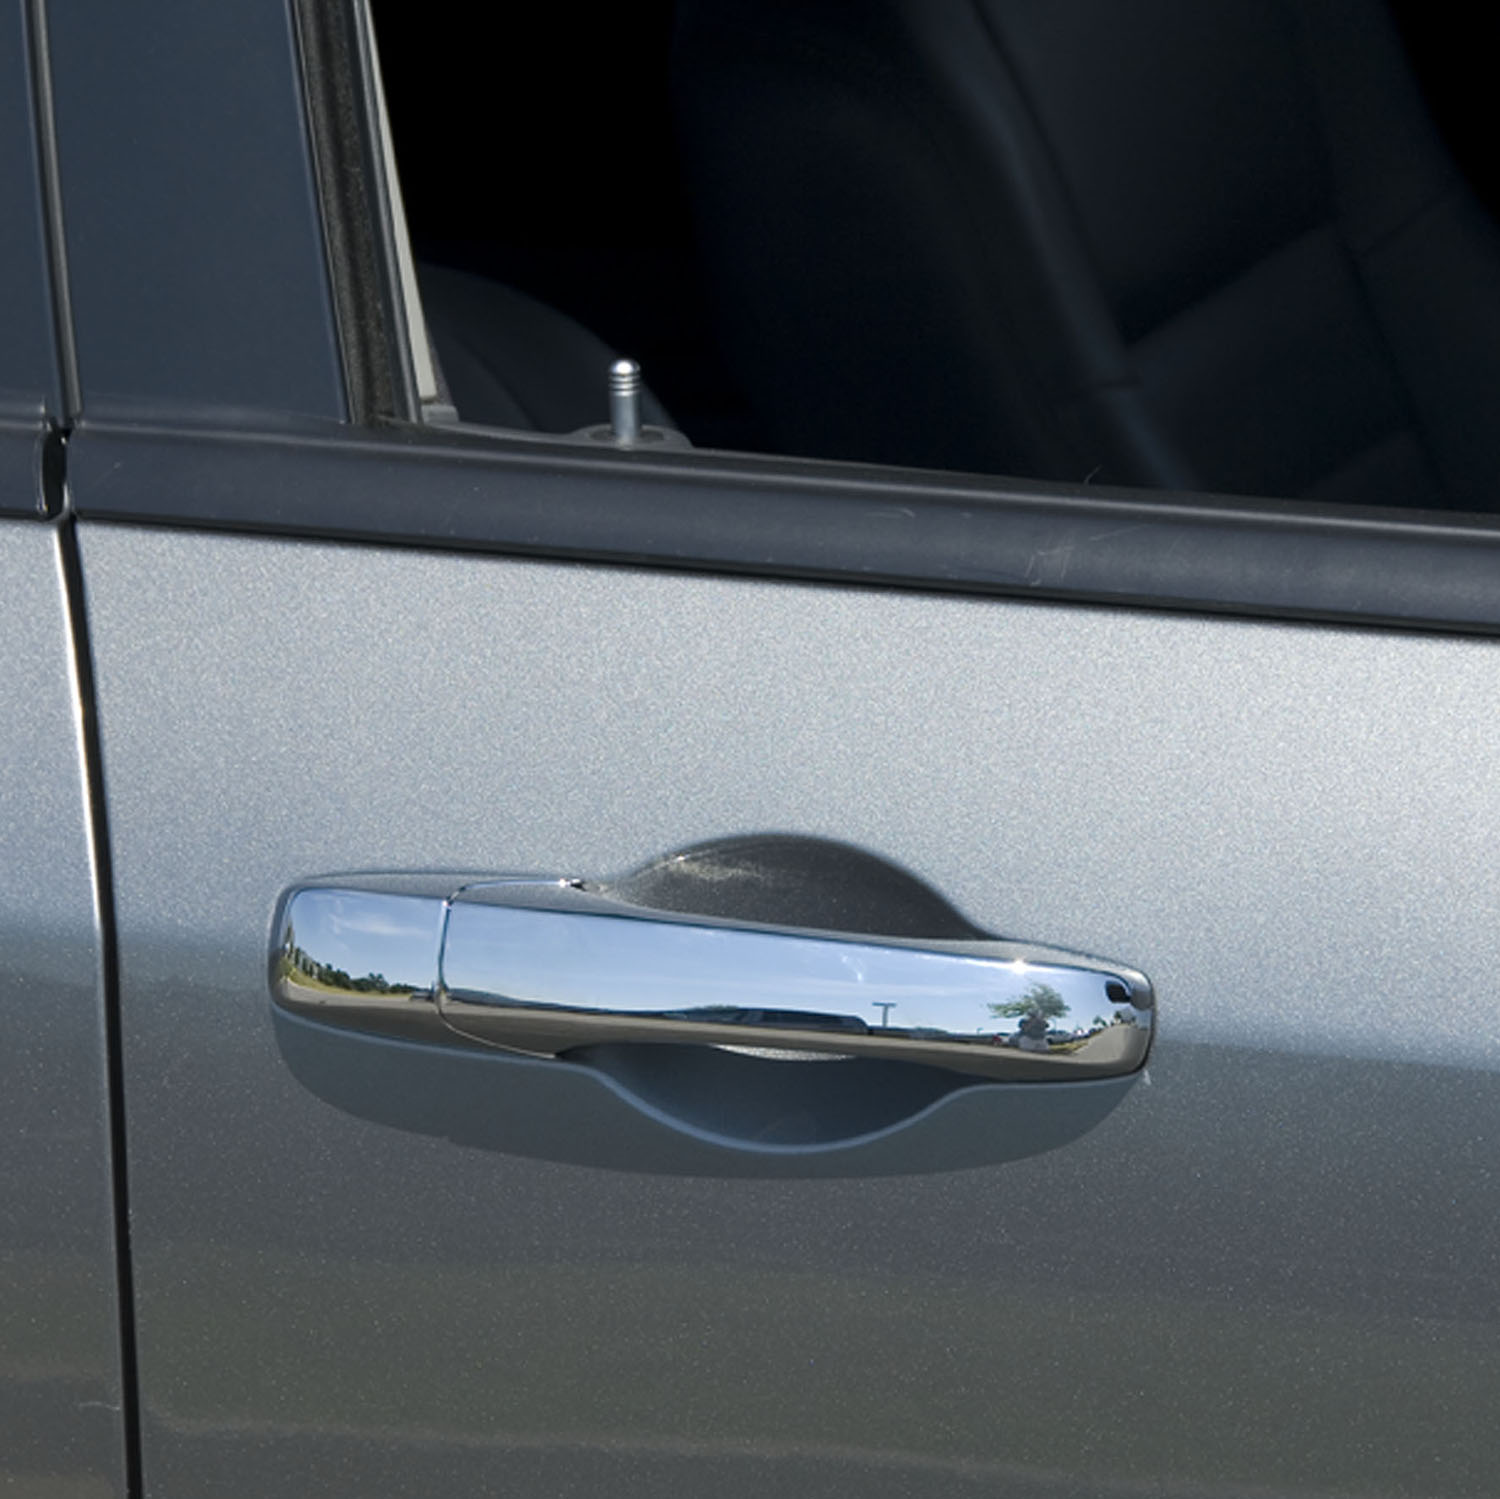 400036 - Putco Chrome Door Handle Covers Fits Chevy Silverado / GMC Sierra  2007-2014 - Front Door Handle Covers